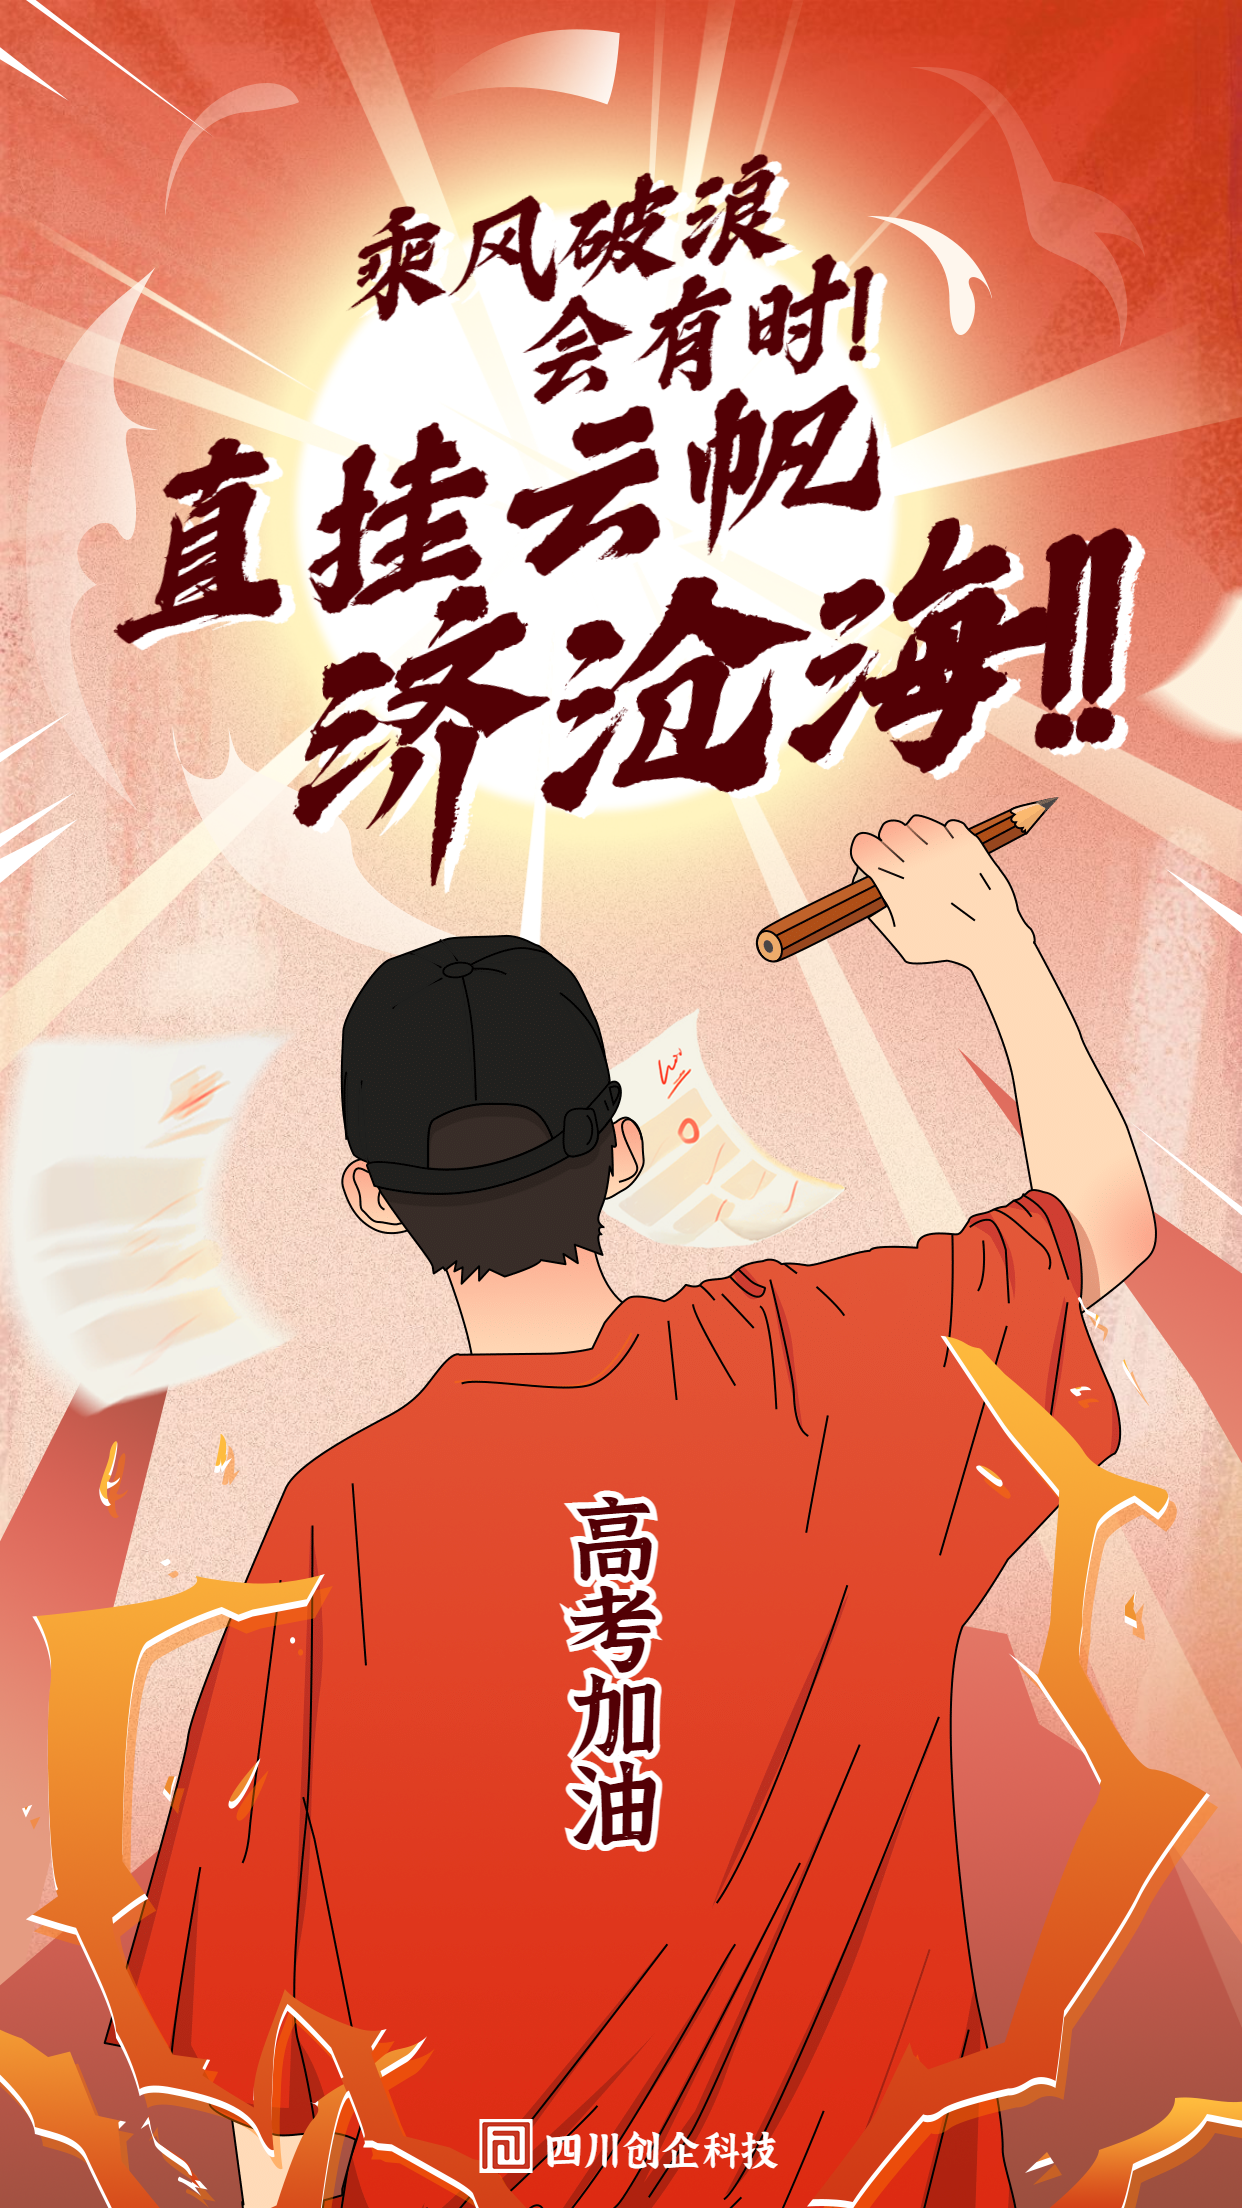 高考加油必胜教育插画海报.png